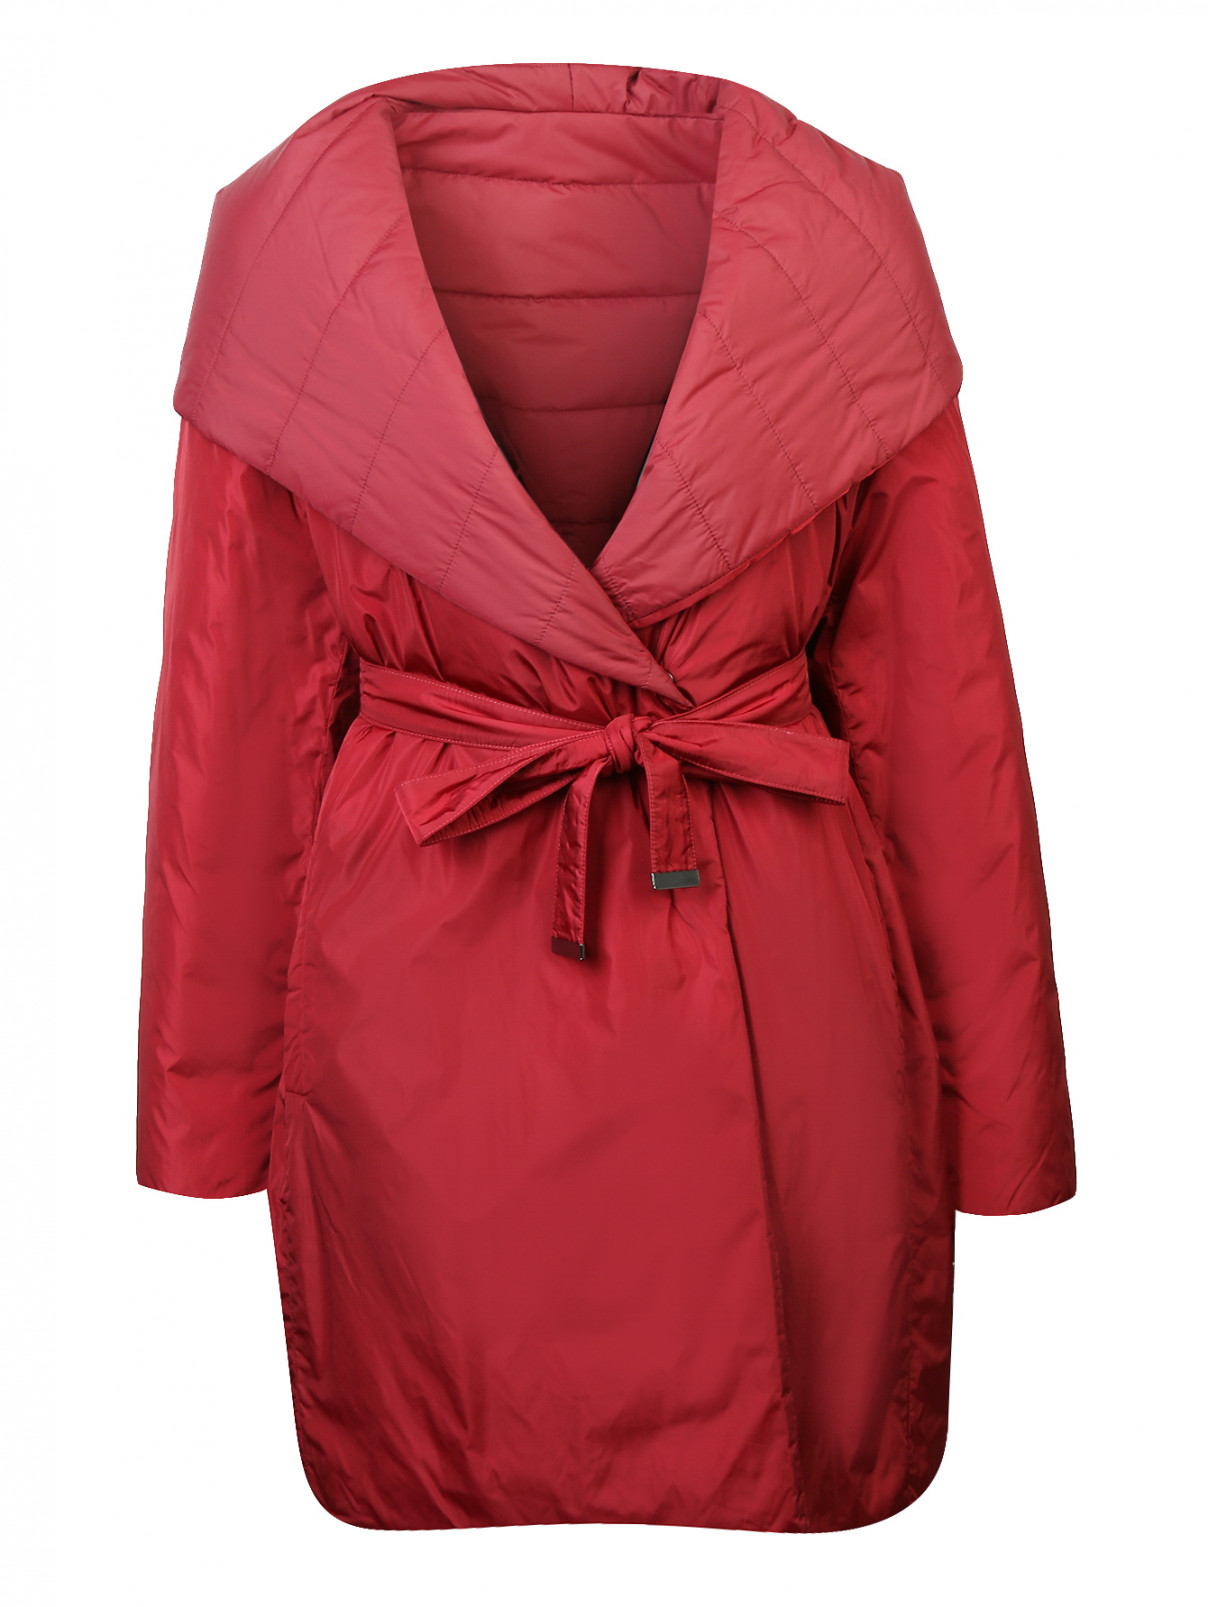 Двухсторонняя куртка с капюшоном Persona by Marina Rinaldi  –  Общий вид  – Цвет:  Красный